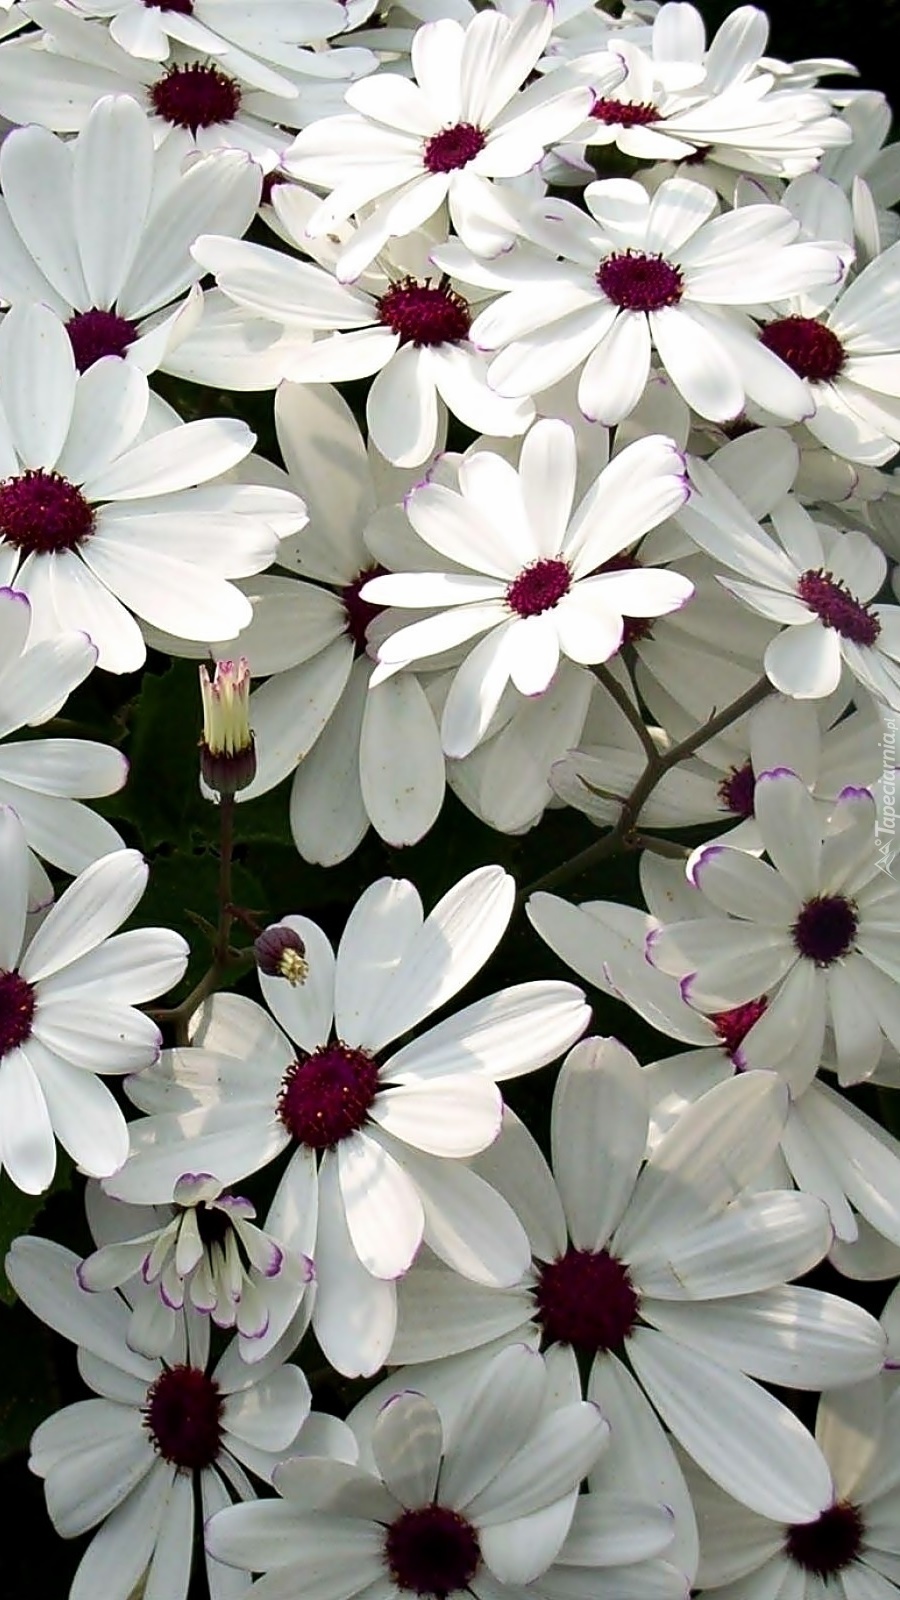 Piękne białe kwiatki o bordowych środkach